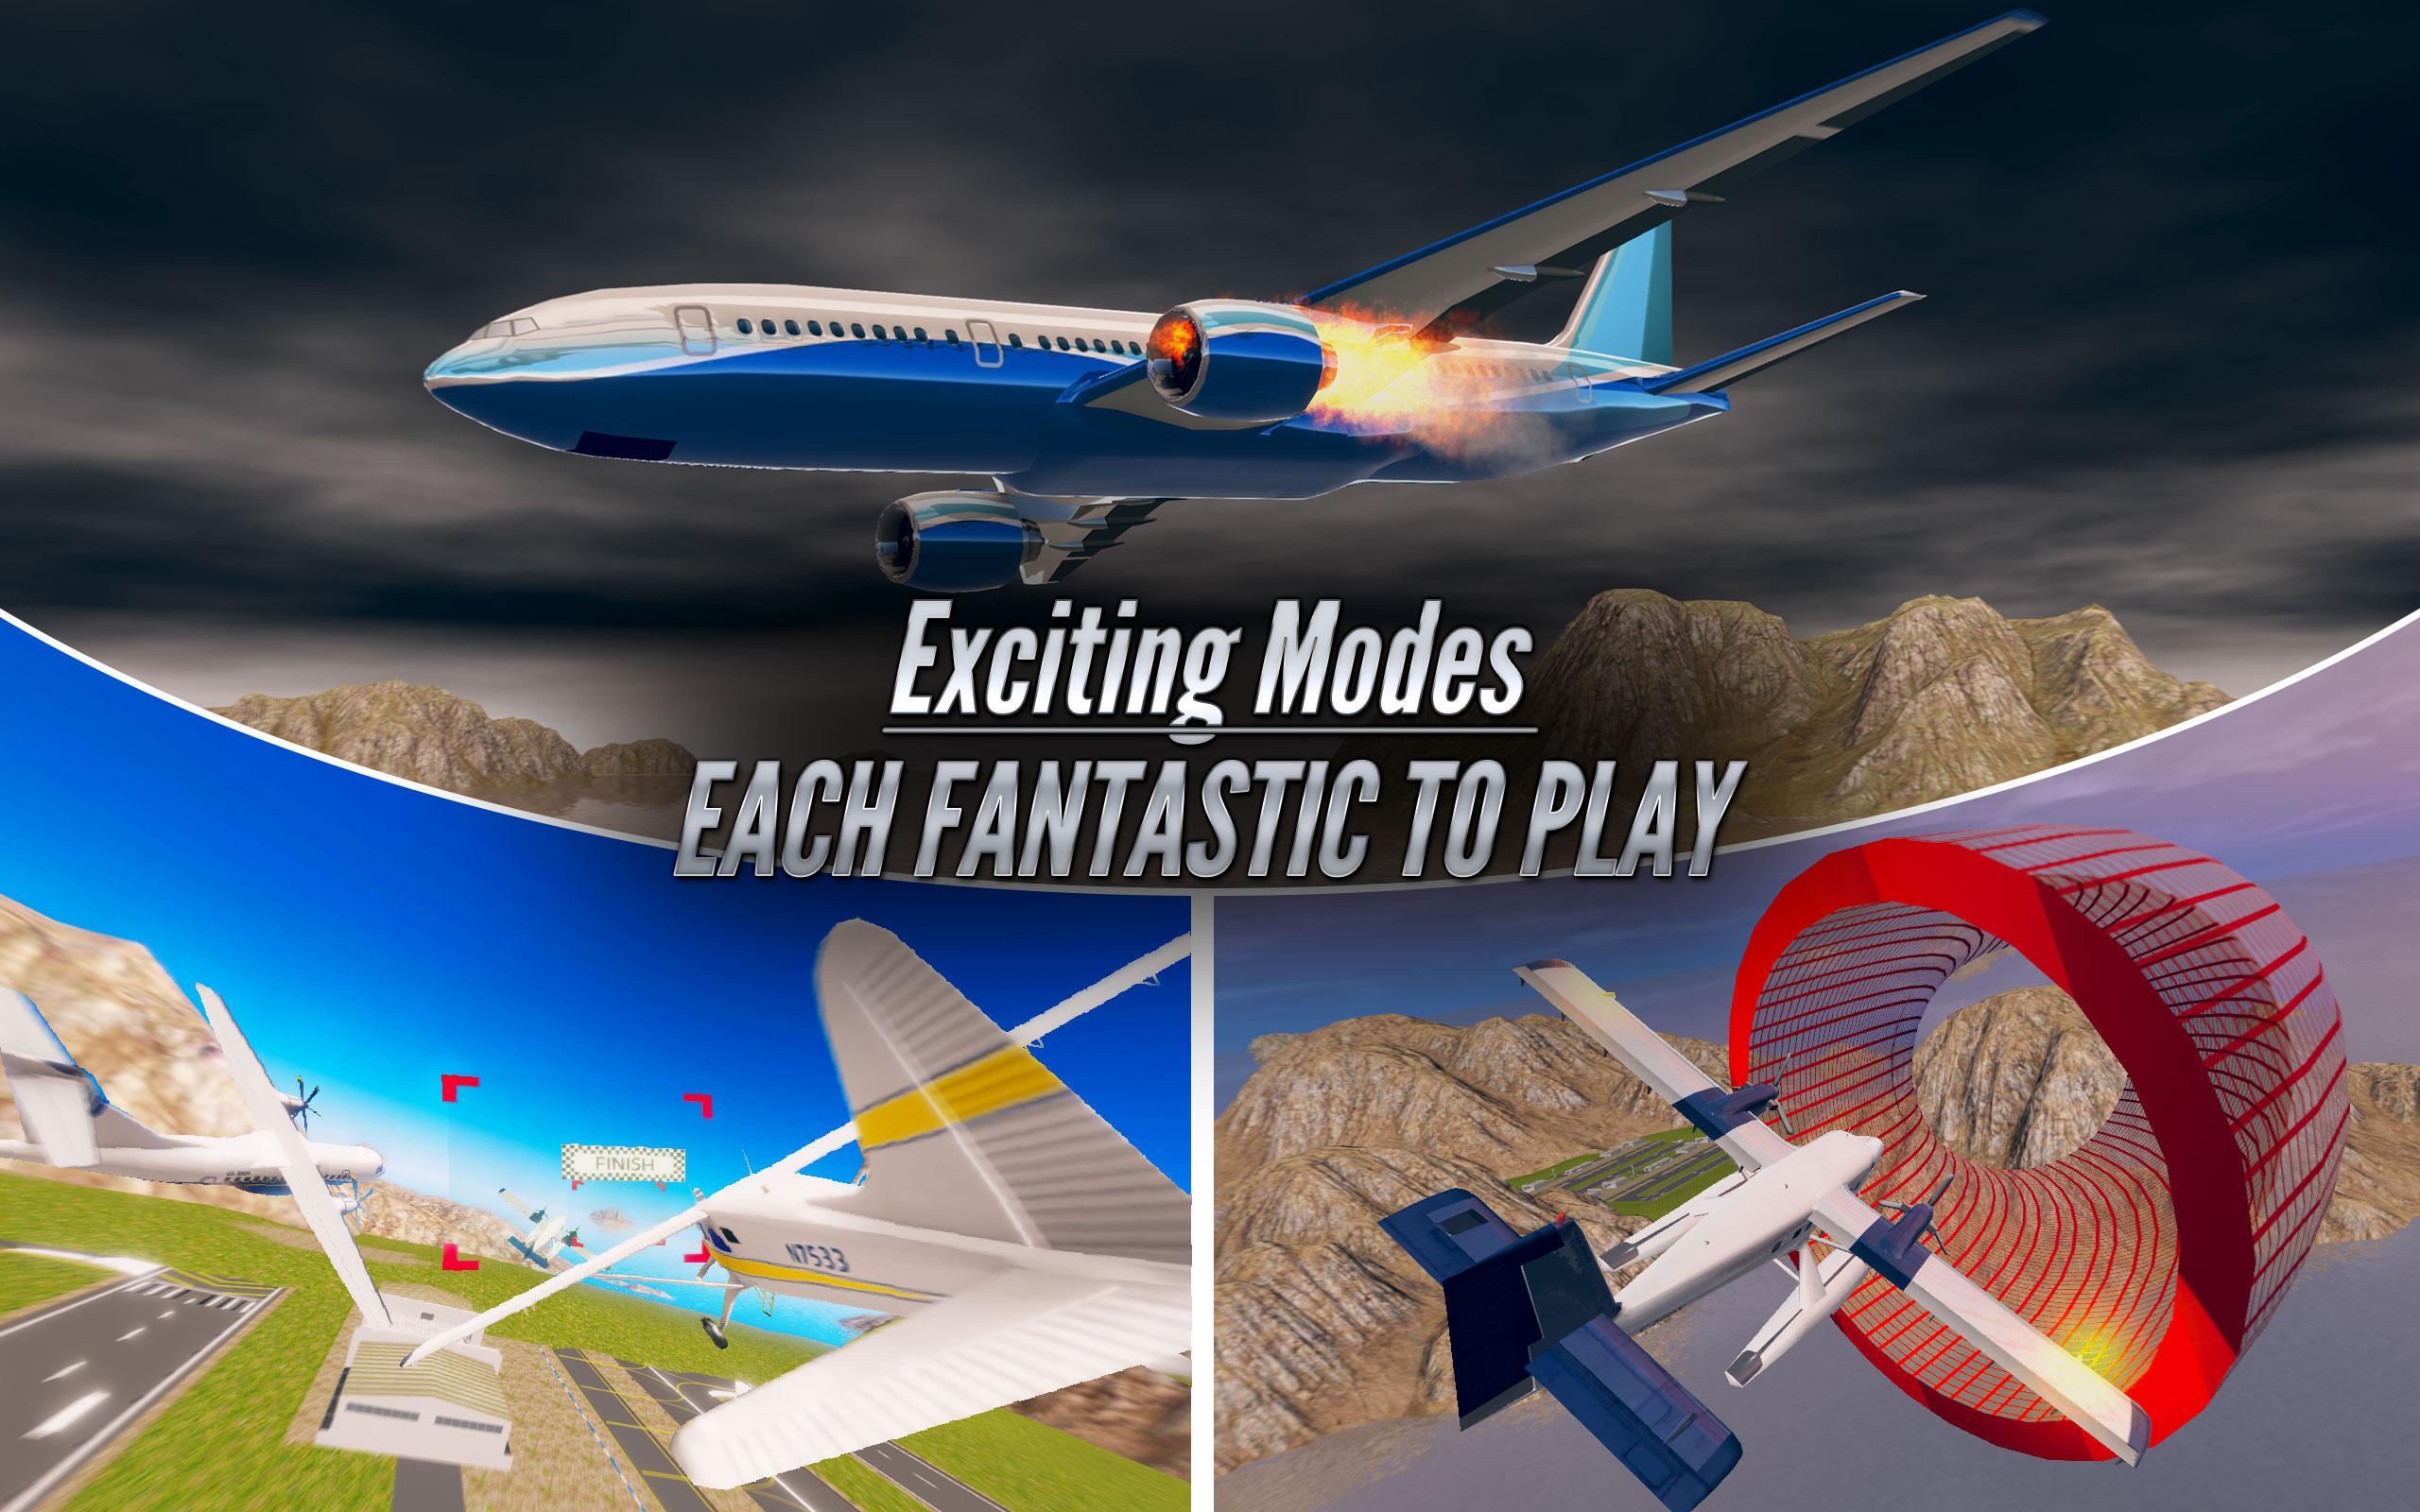 Android 用の 飛行機パイロットの飛行シミュレータ 19 飛行機ゲーム Apk をダウンロード